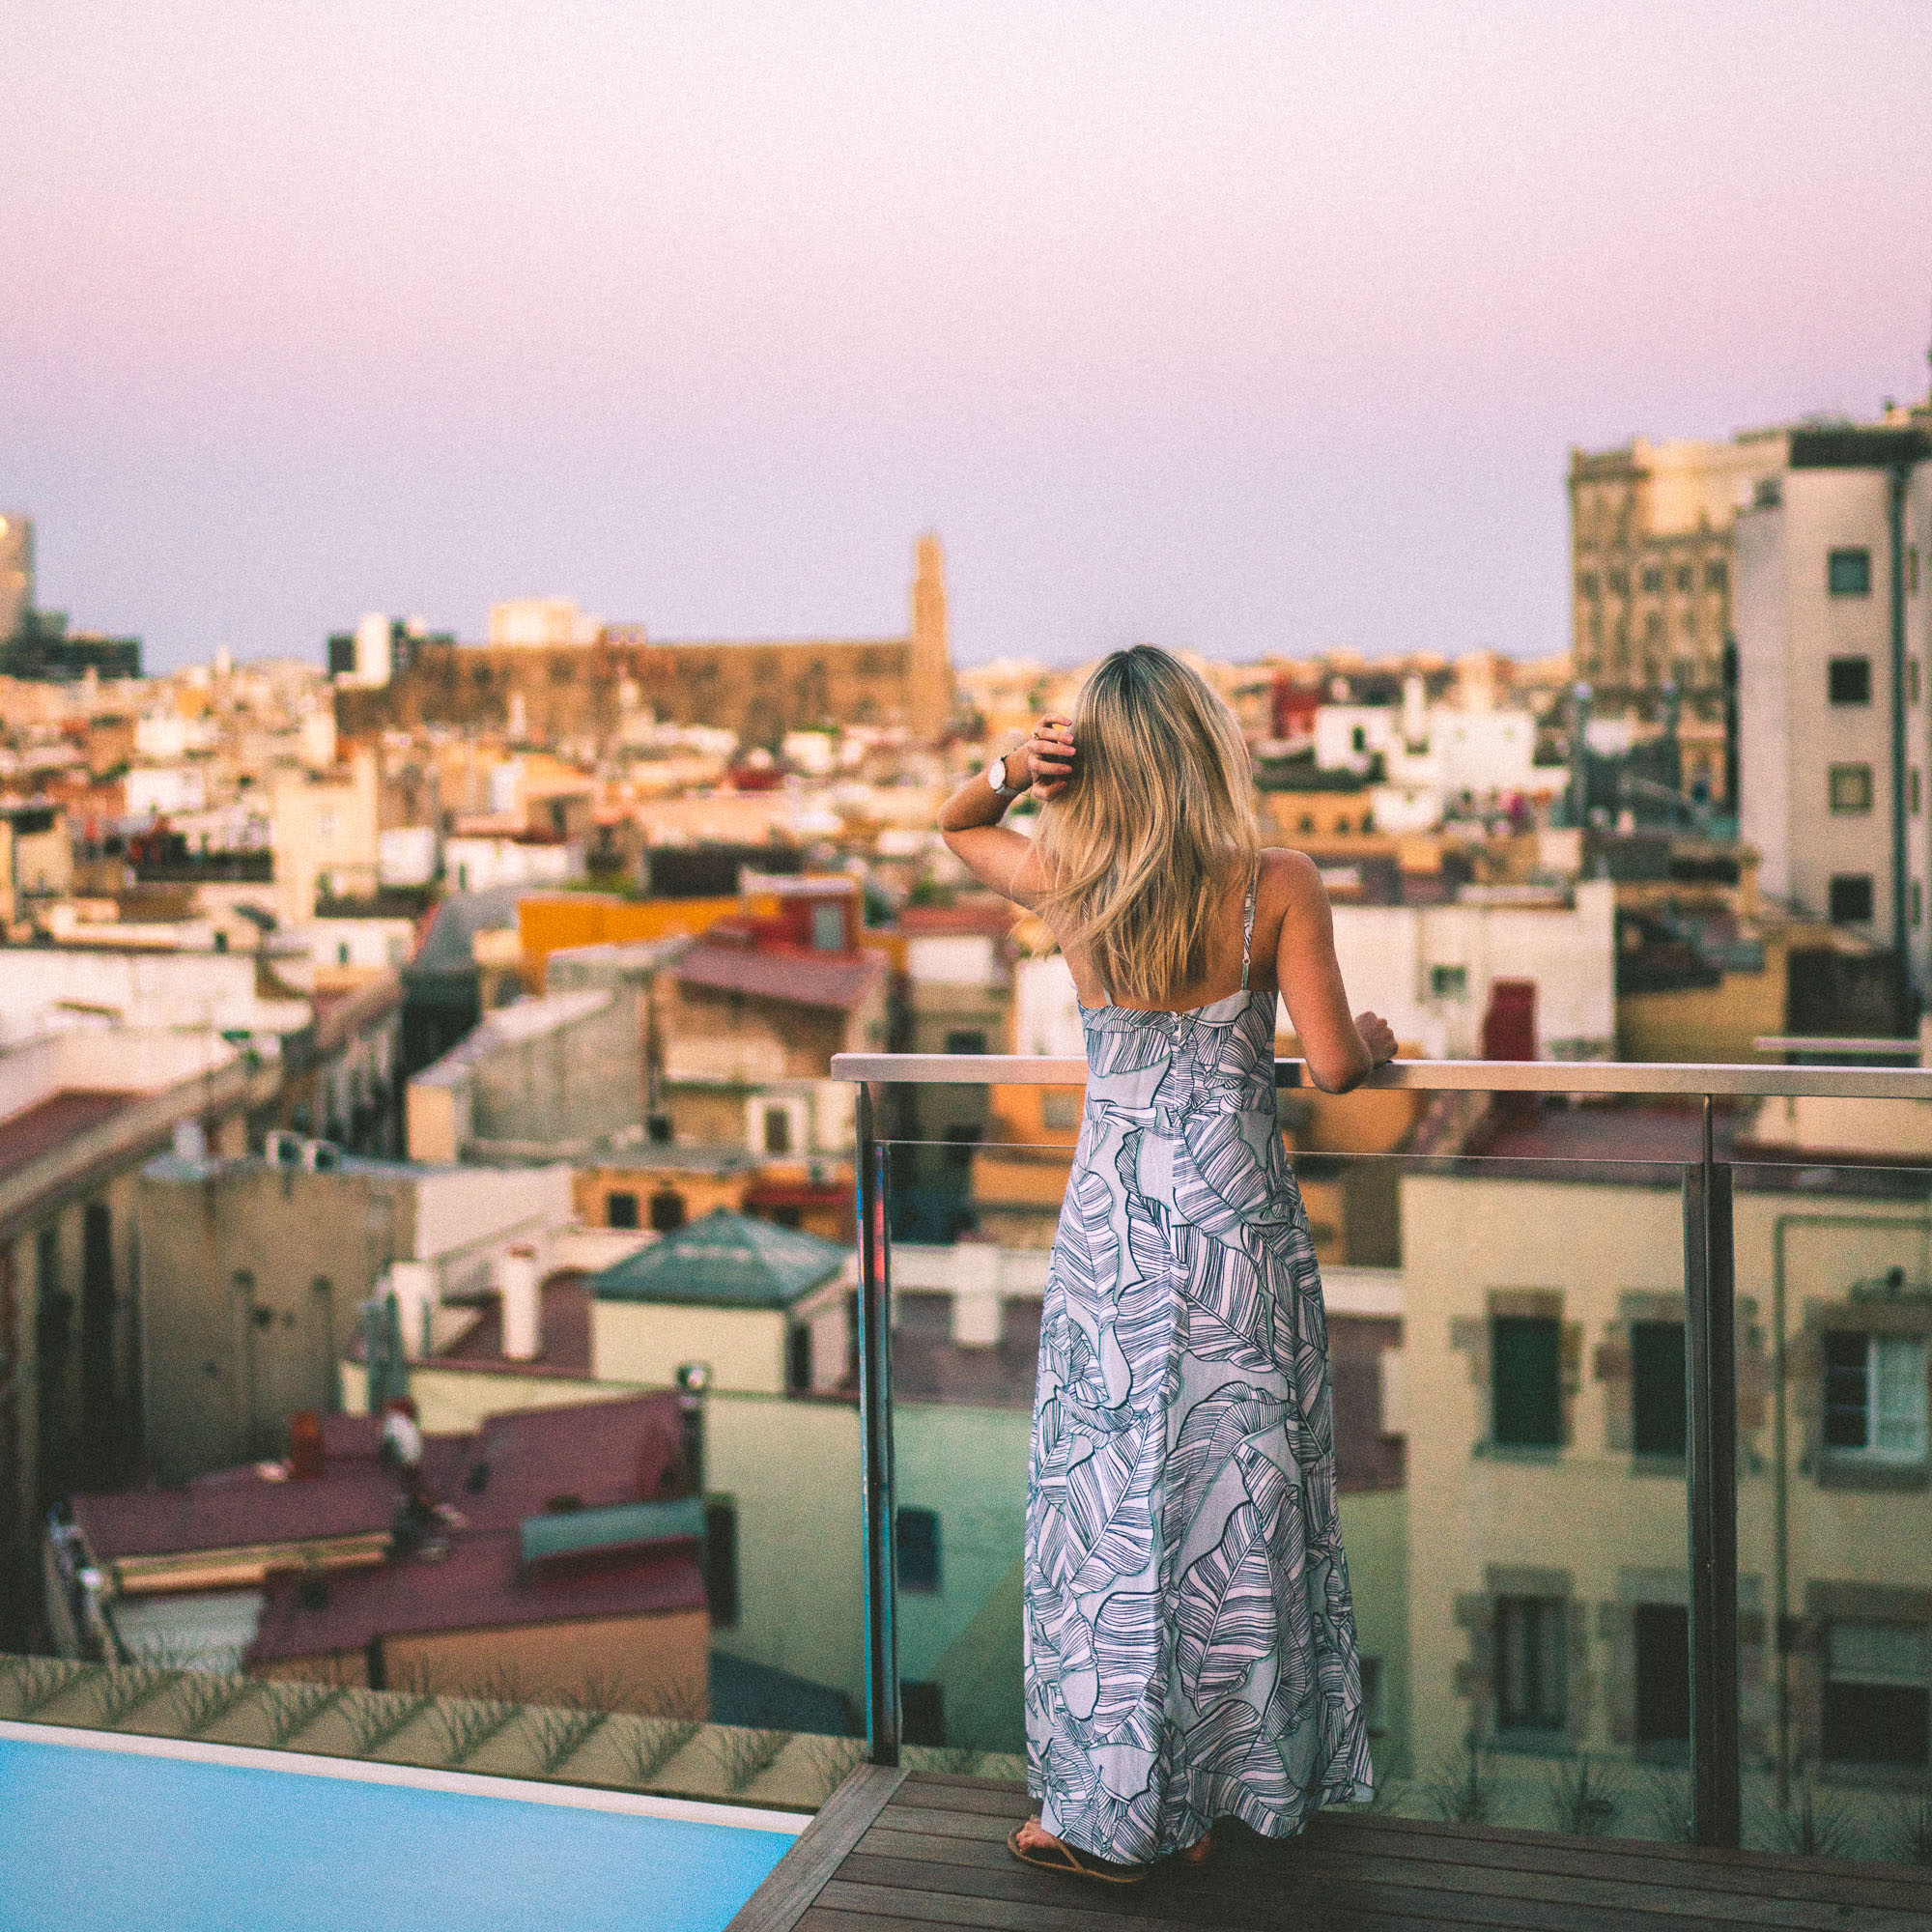 Rooftop views in Barcelona, Spain